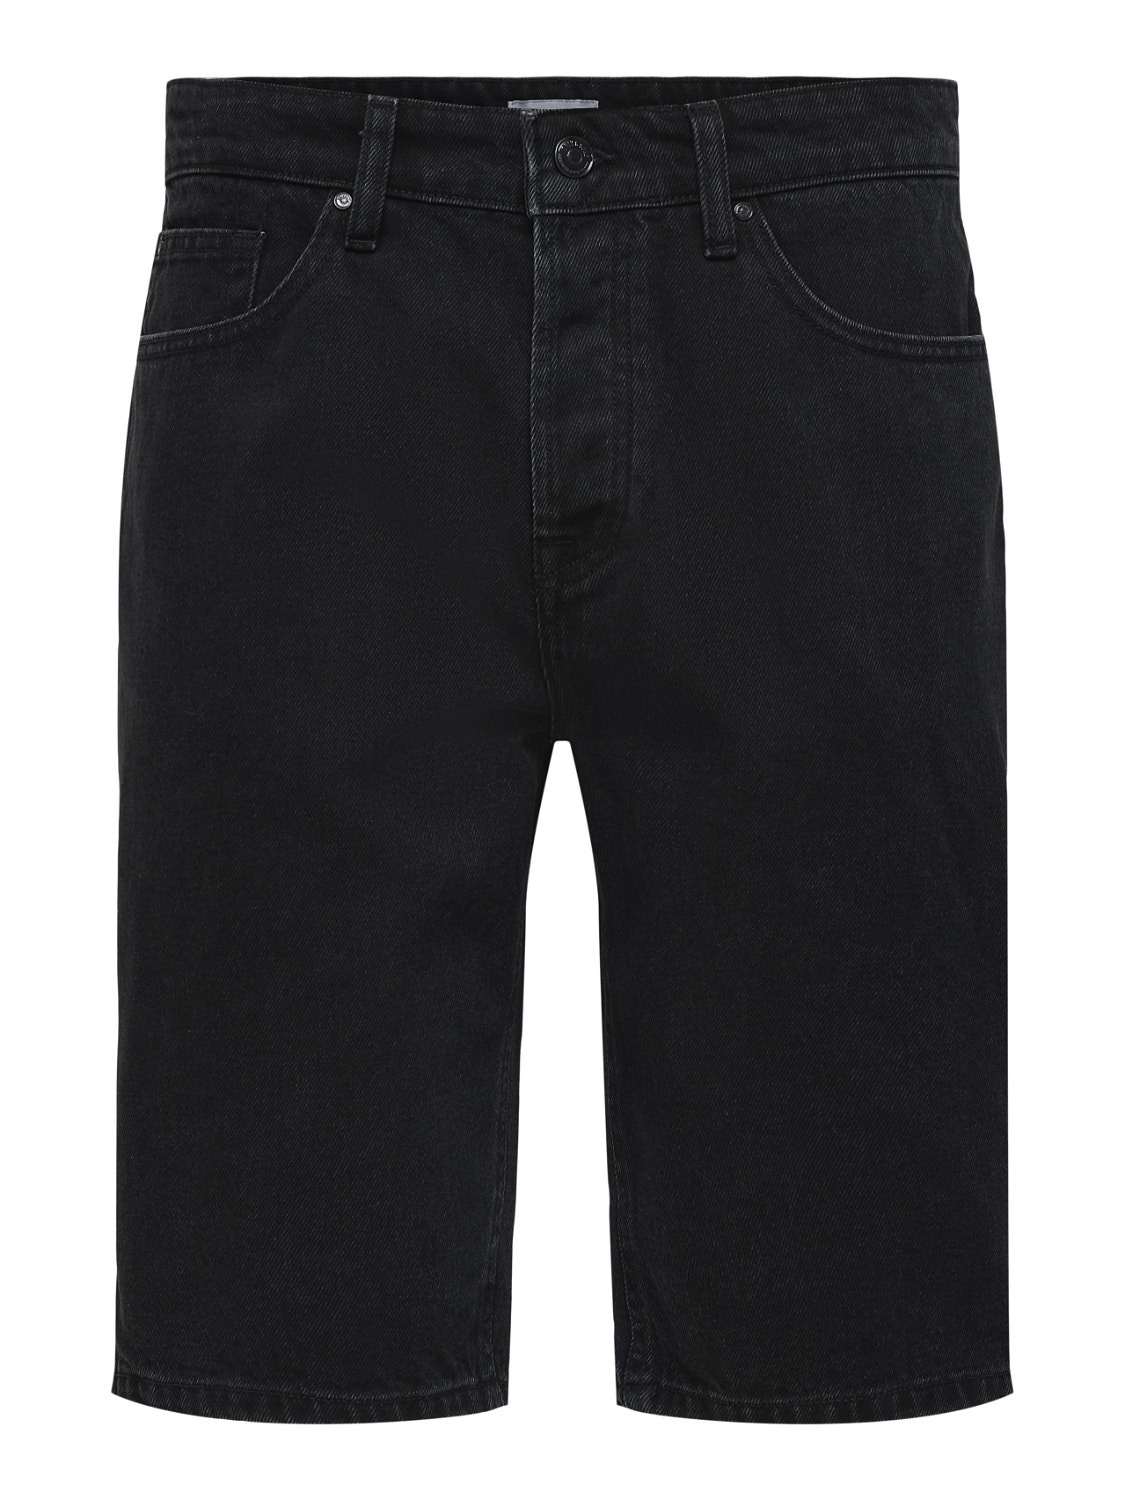 ONLY & SONS Verjüngt Shorts -Black Denim - 22021899